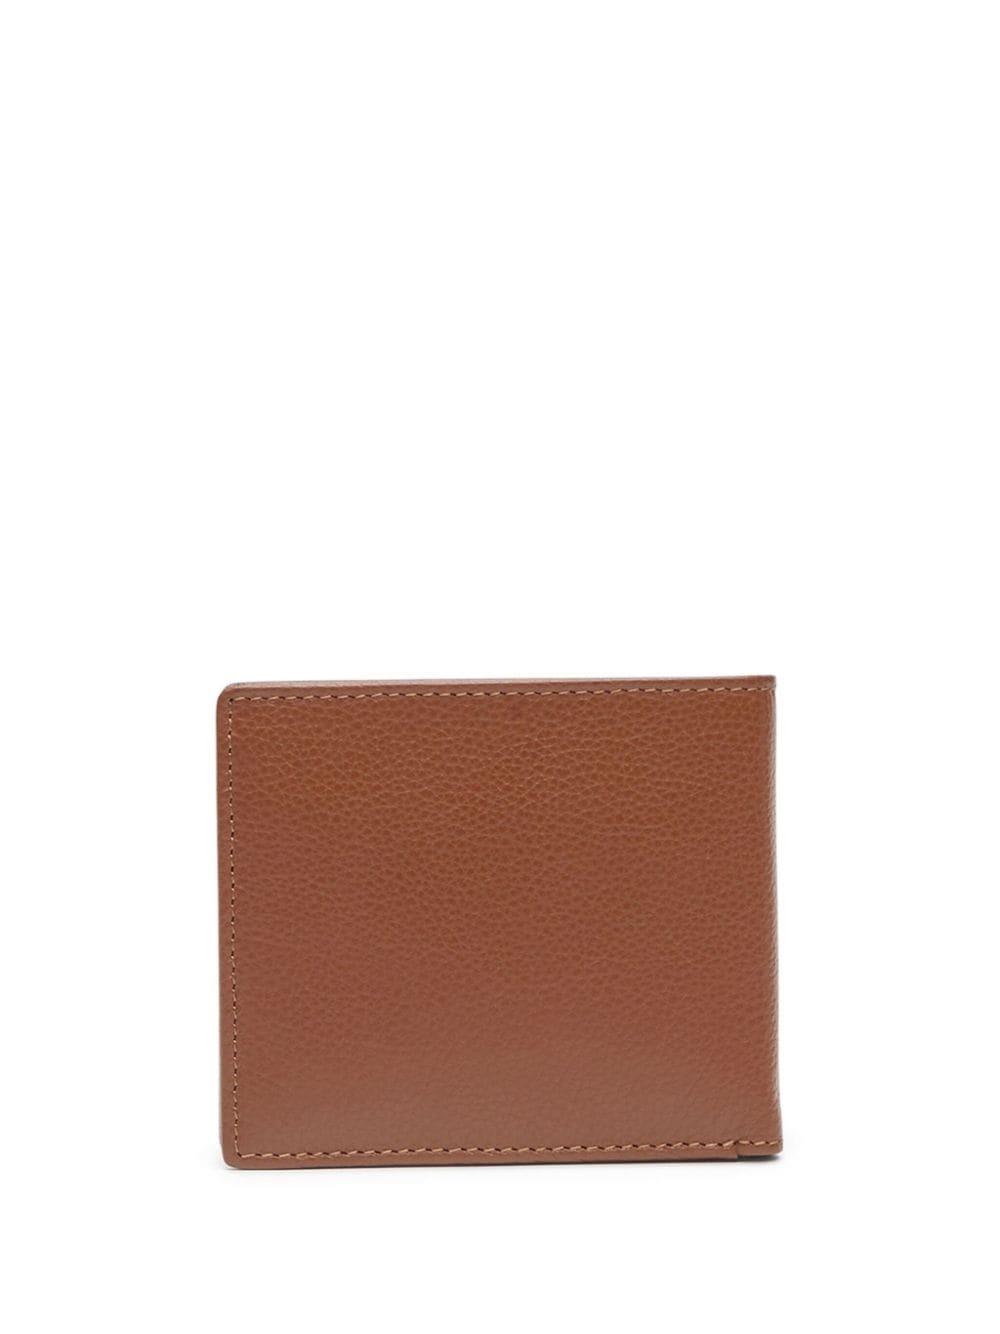 Diesel Medal-D leather wallet - Brown